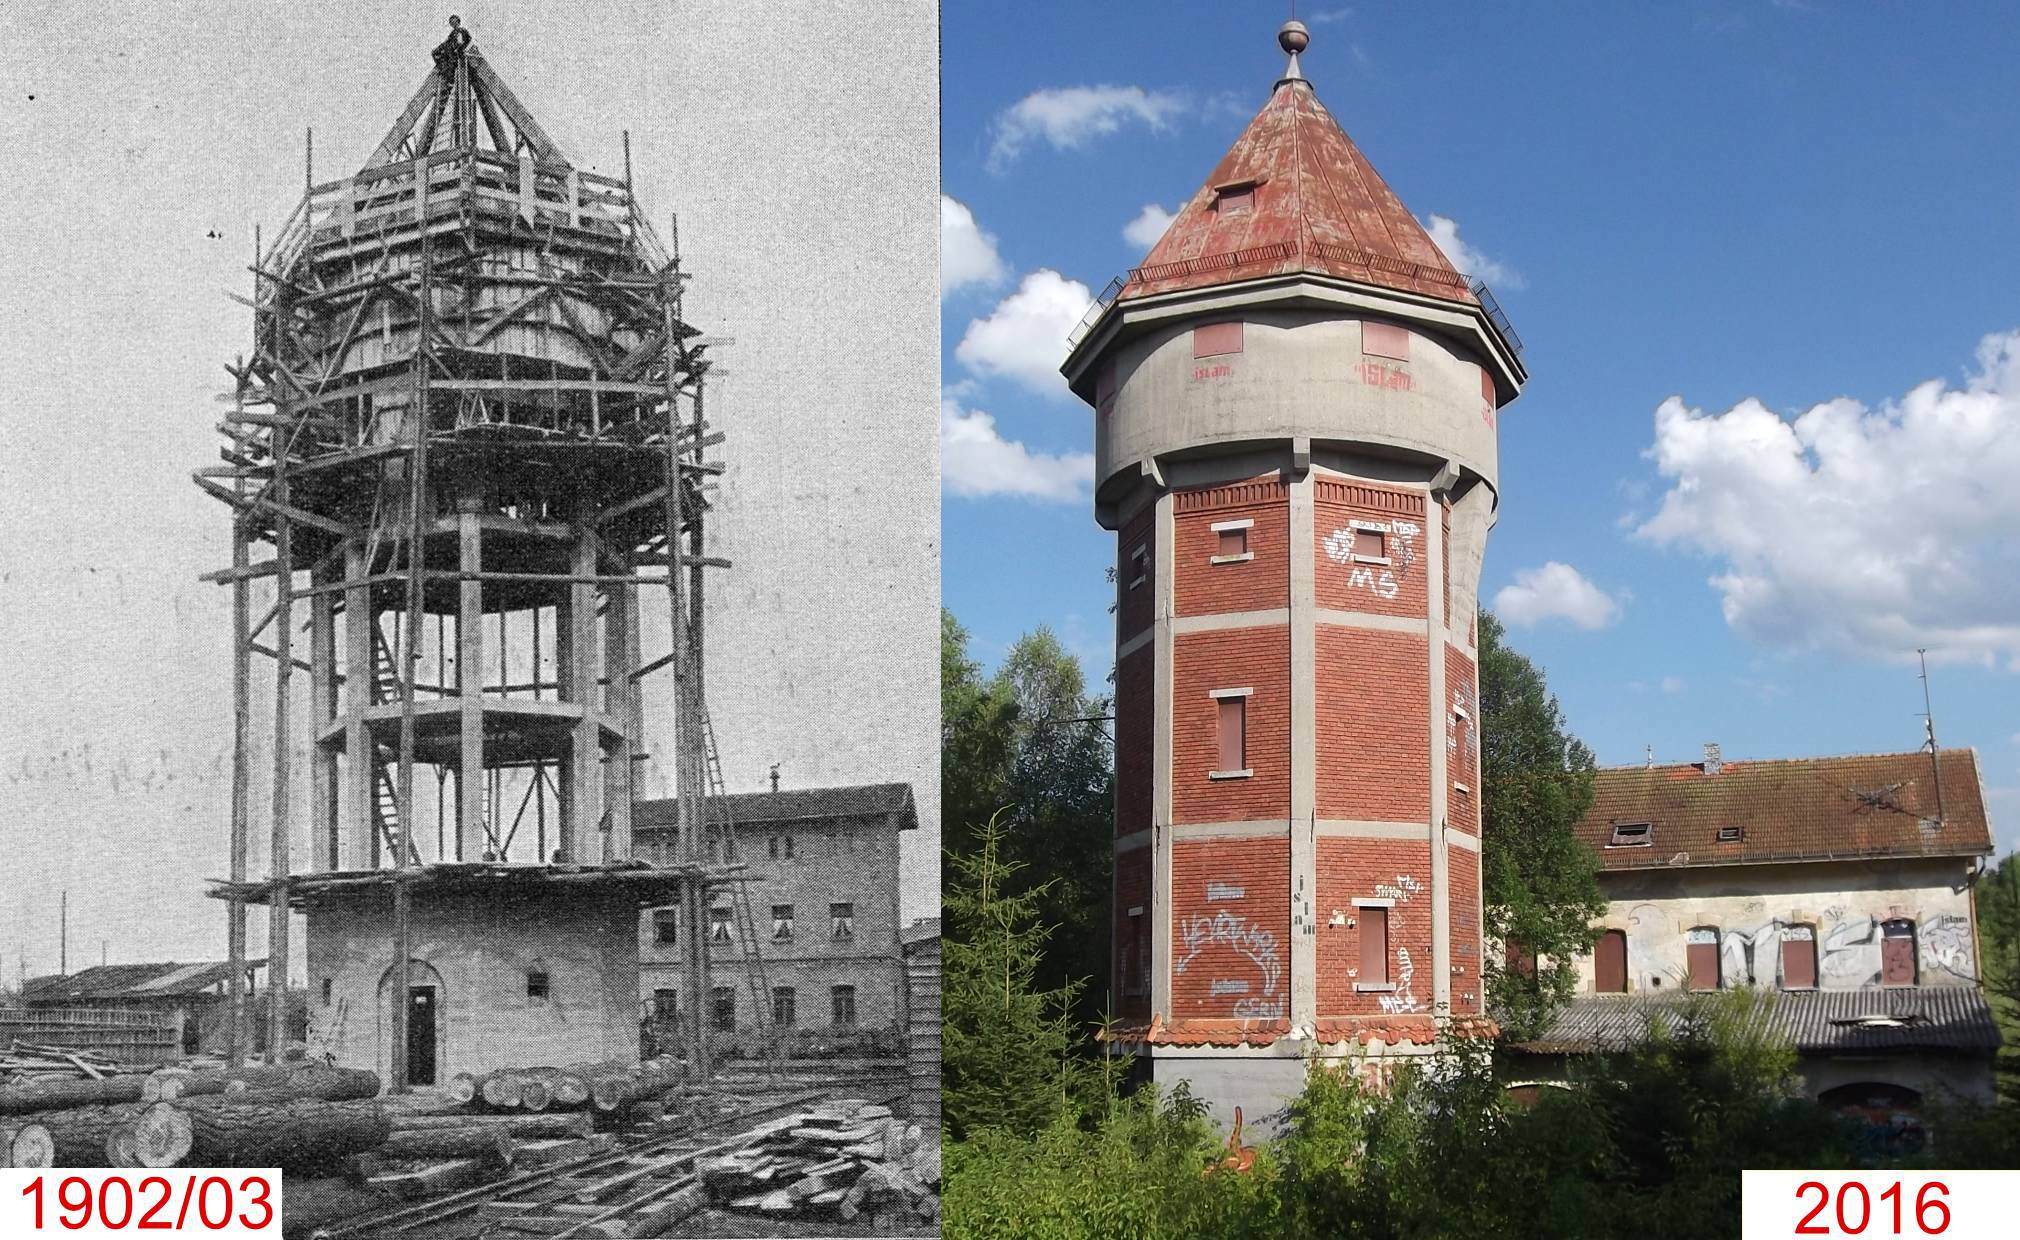 Linkes Photo: Bau des Wasserturms im Jahr 1902/03; rechtes Photo: Heutige Ansicht des Wasserturm mit ehem. Kantinengebäude des Schwellenwerks